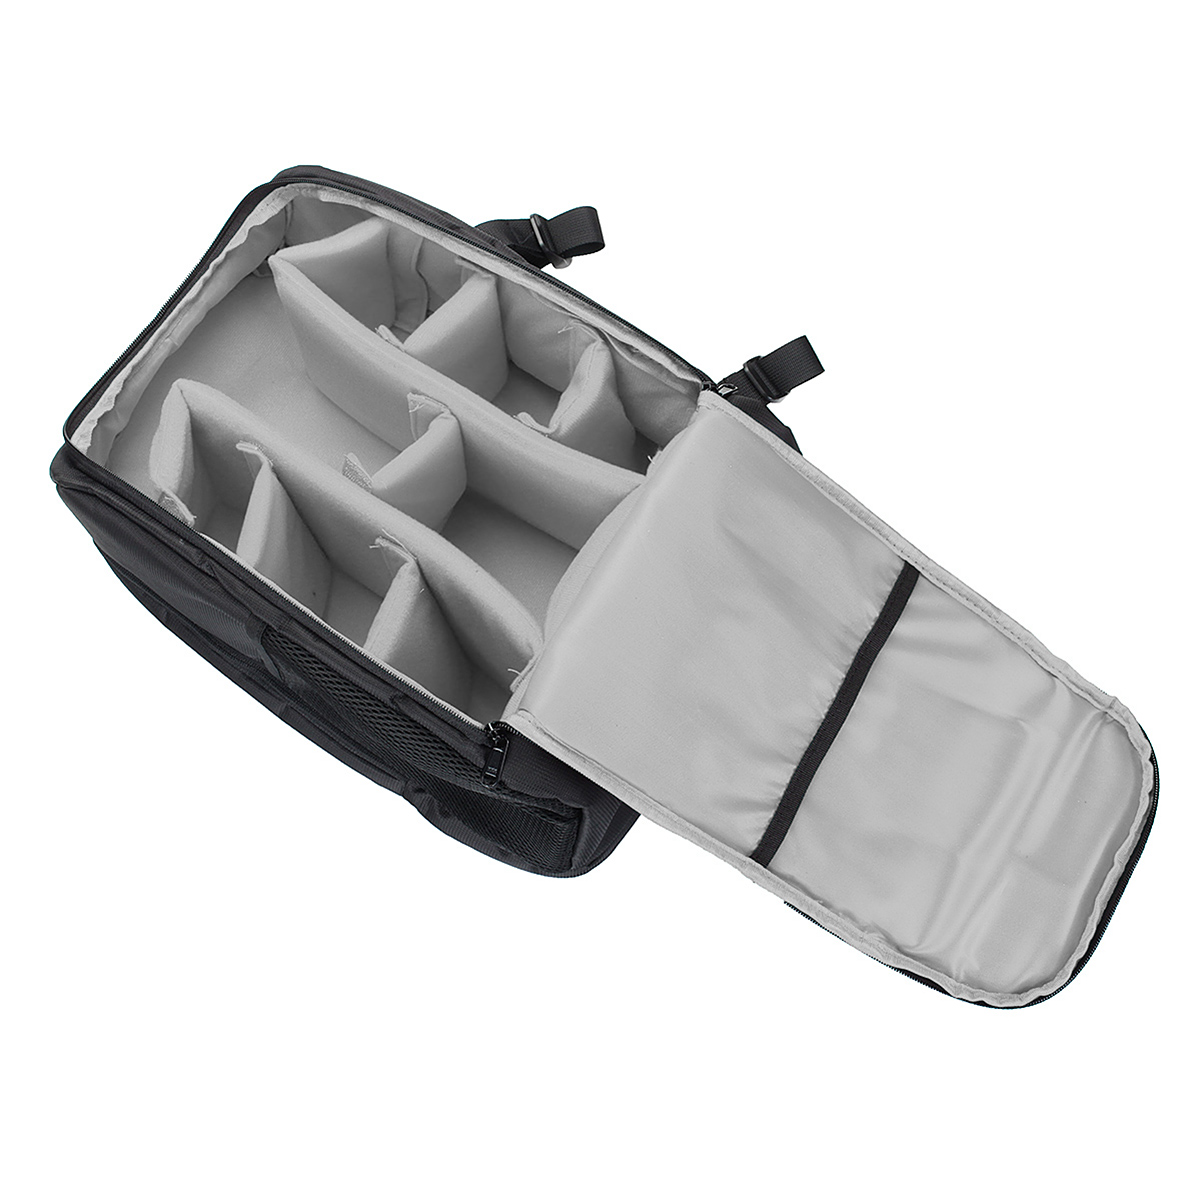 Waterproof-Backpack-Shoulder-Bag-Laptop-Case-For-DSLR-Camera-Lens-Accessories-1401643-7